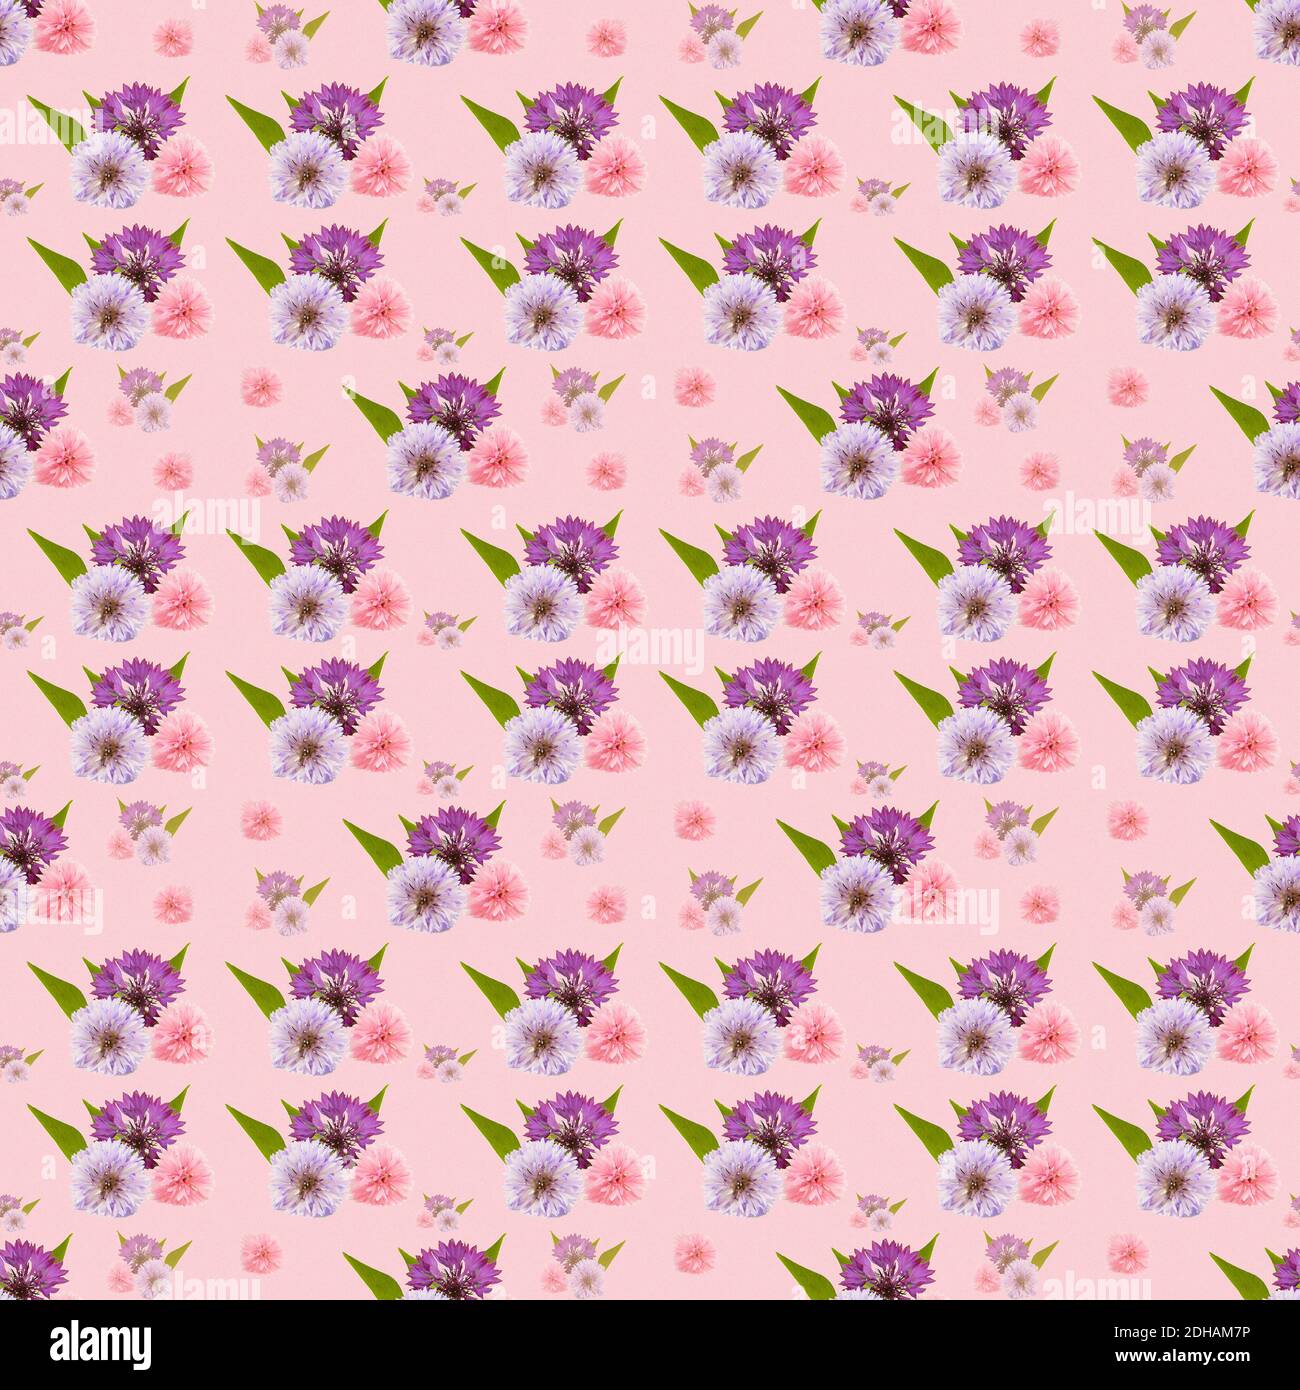 Nahtlose Muster Kornblumen in einer wiederholbaren Fliesenanordnung ideal für Schreibwaren und Stoffe , hübsch auf einem rosa Hintergrund Stockfoto